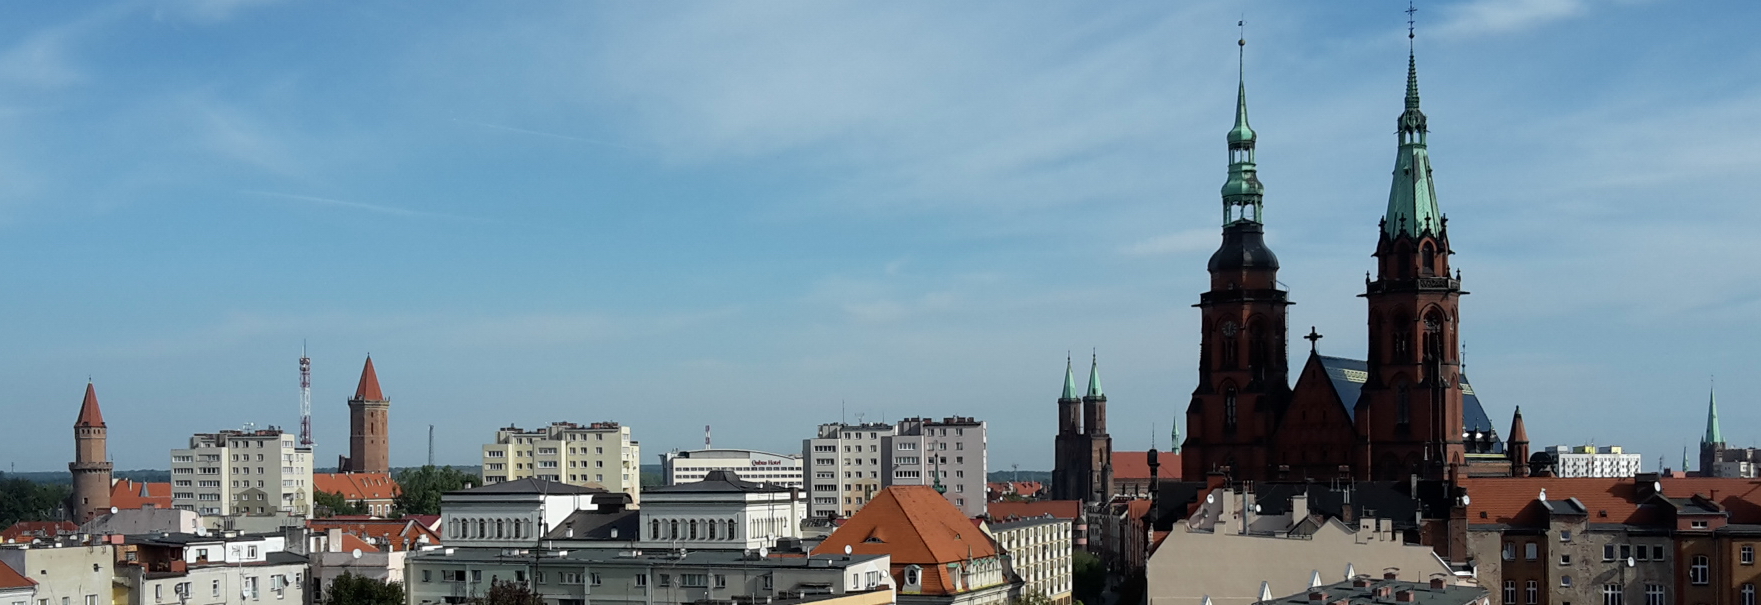 Panorama der Stadt Liegnitz